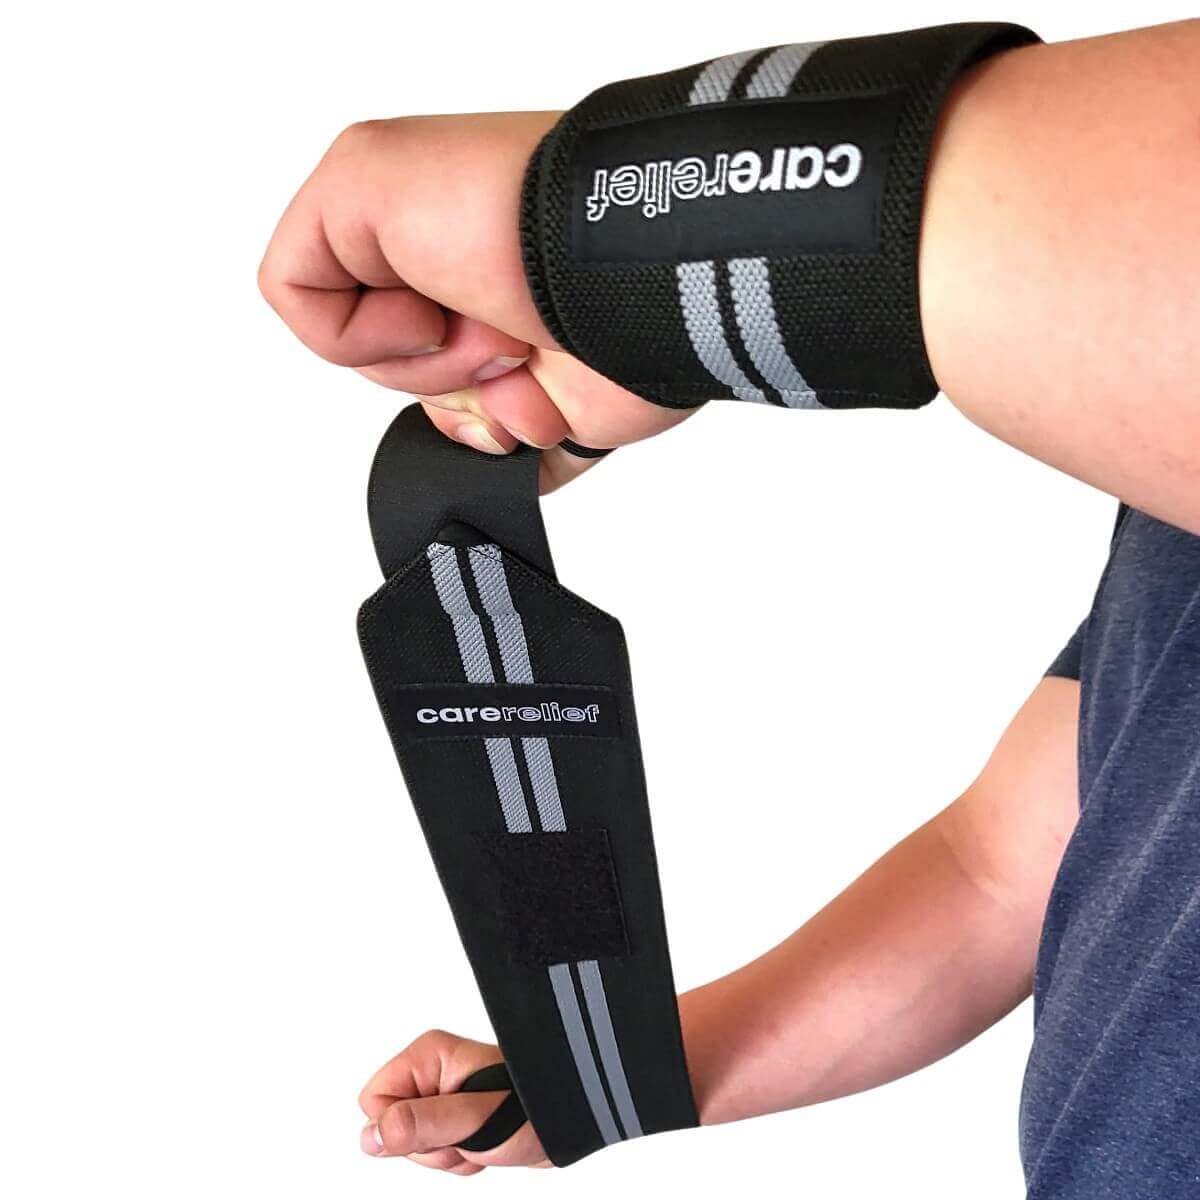 Wrist wraps sæt støtter dine håndled ved sport og træning med bænkpres og skulderløft, 60 cm, sort/grå. Køb 1 sæt wraps håndledsbind med håndledsstøtte mod smerter og skader hos Carerelief.dk